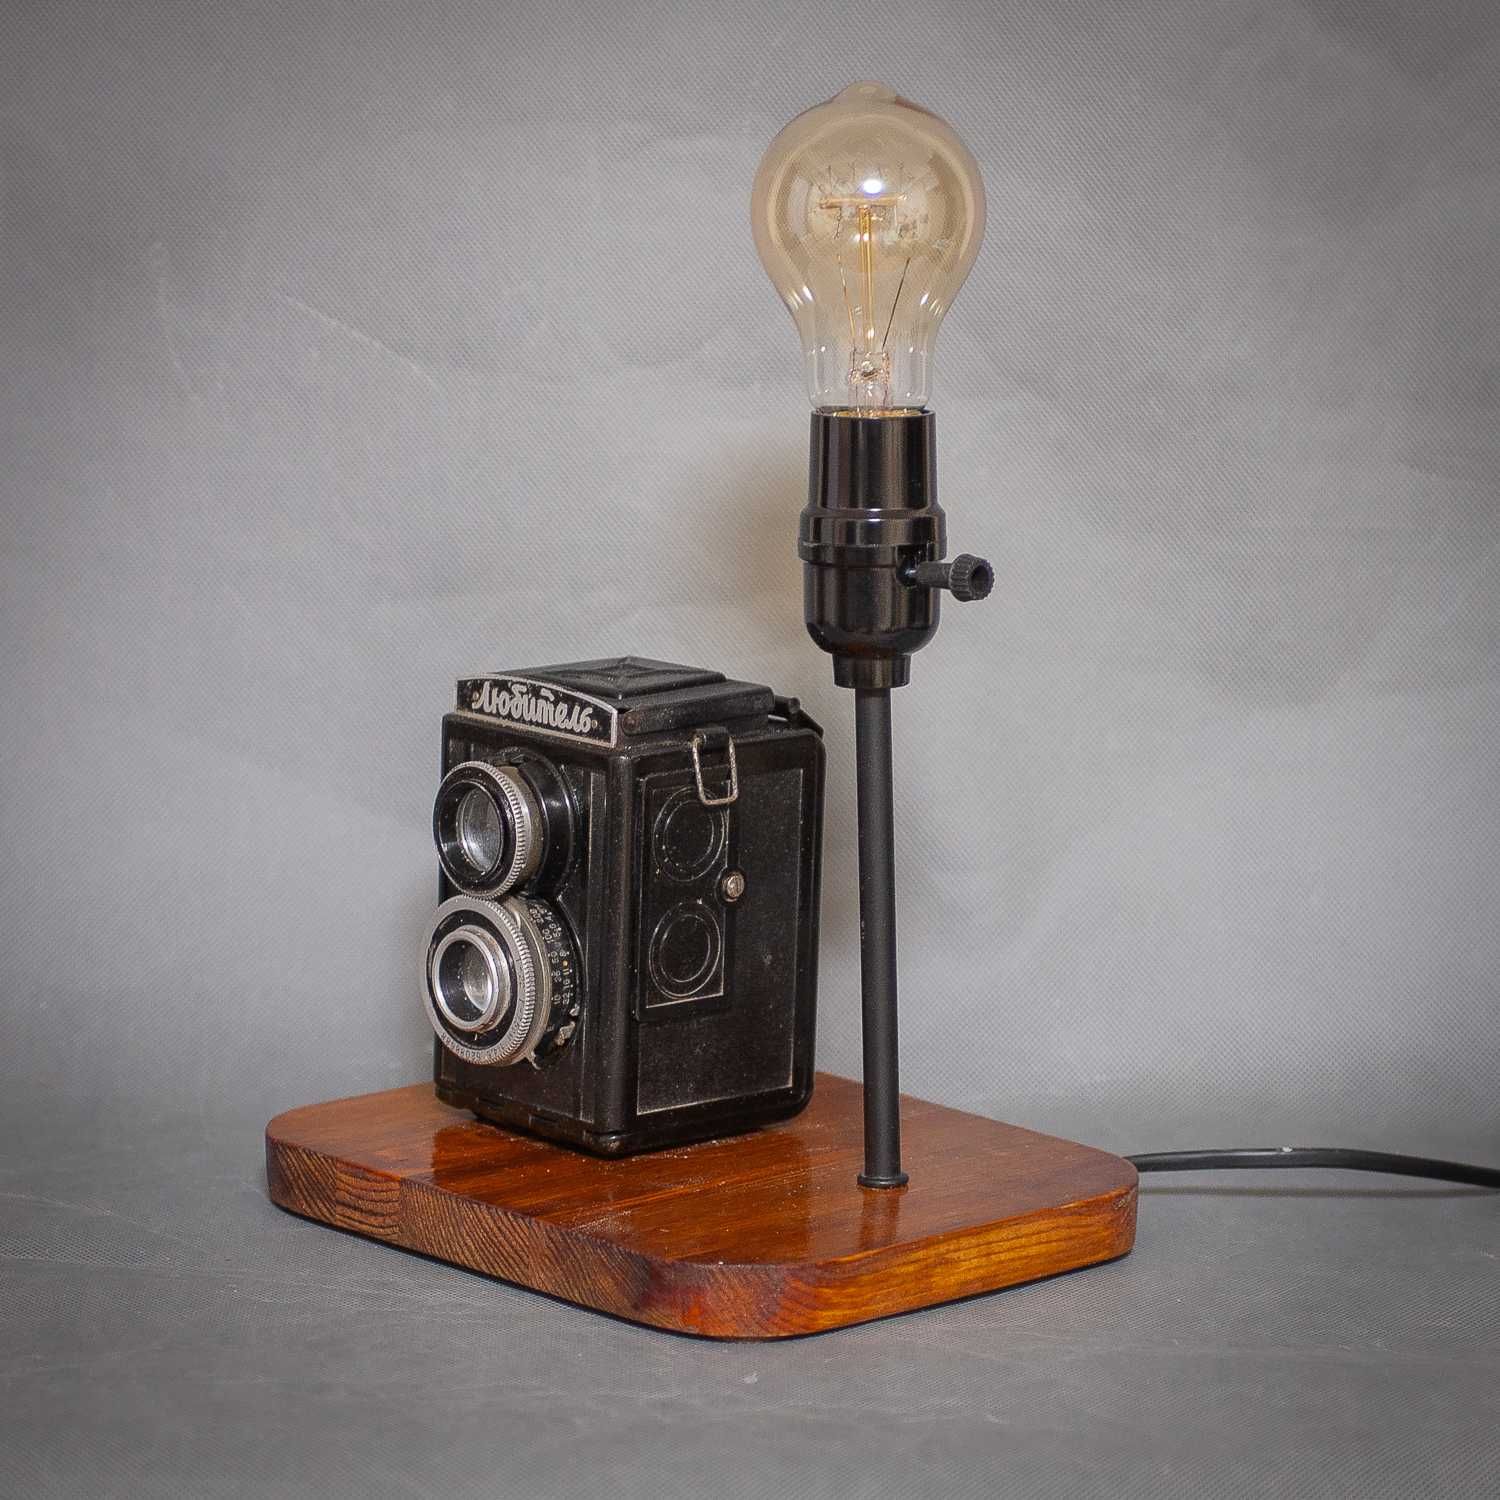 Лучший оригинальный подарок фотографу-настольный Лофт светильник.